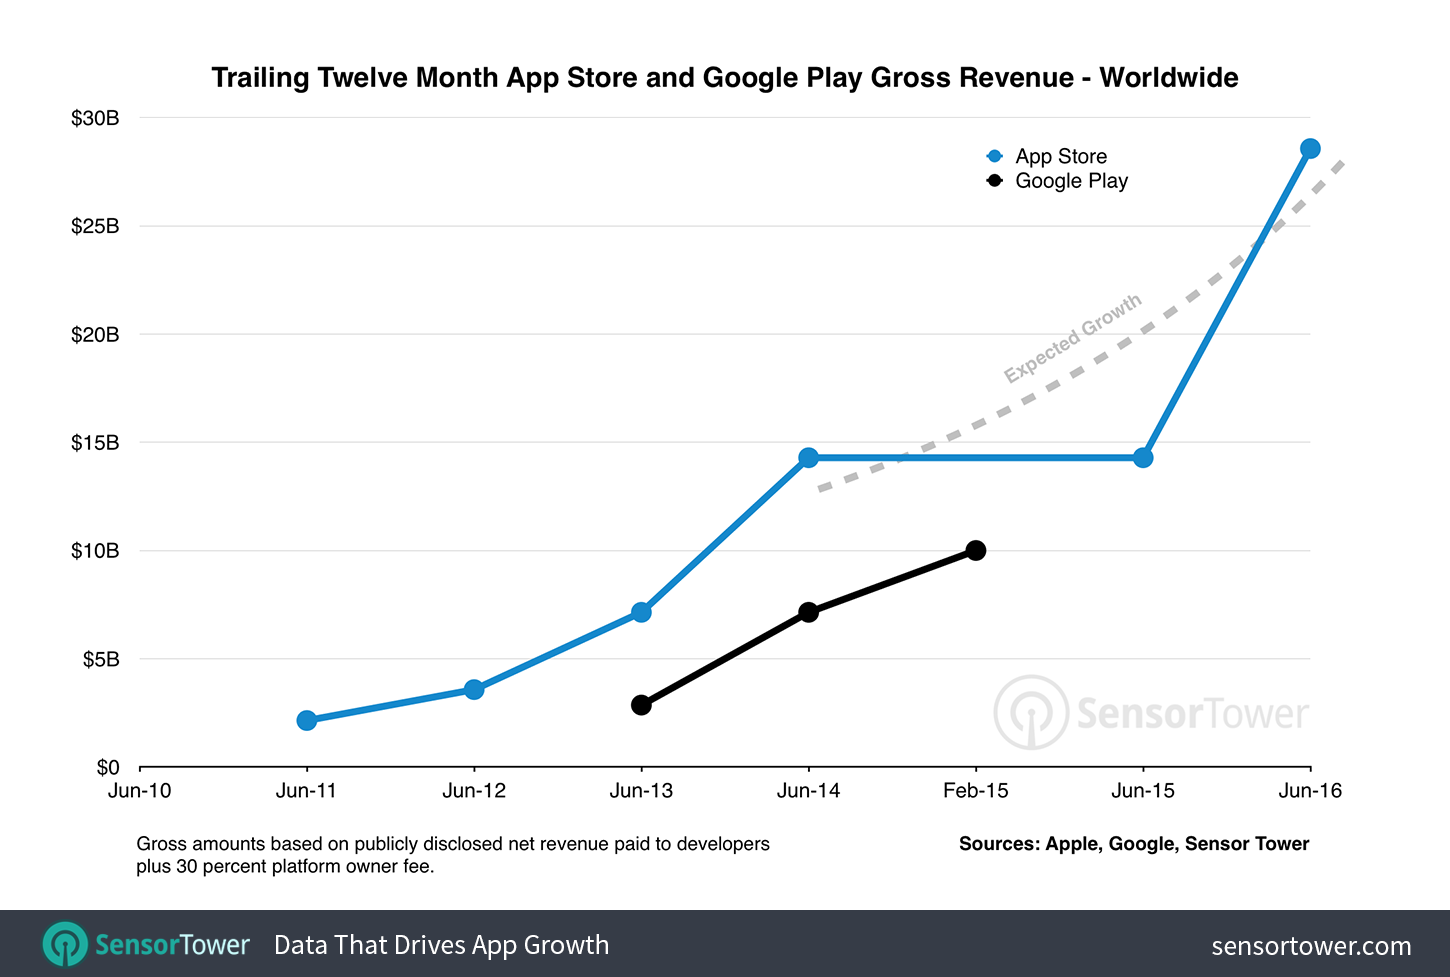 Worldwide App Store Gross Revenue Growth since 2011